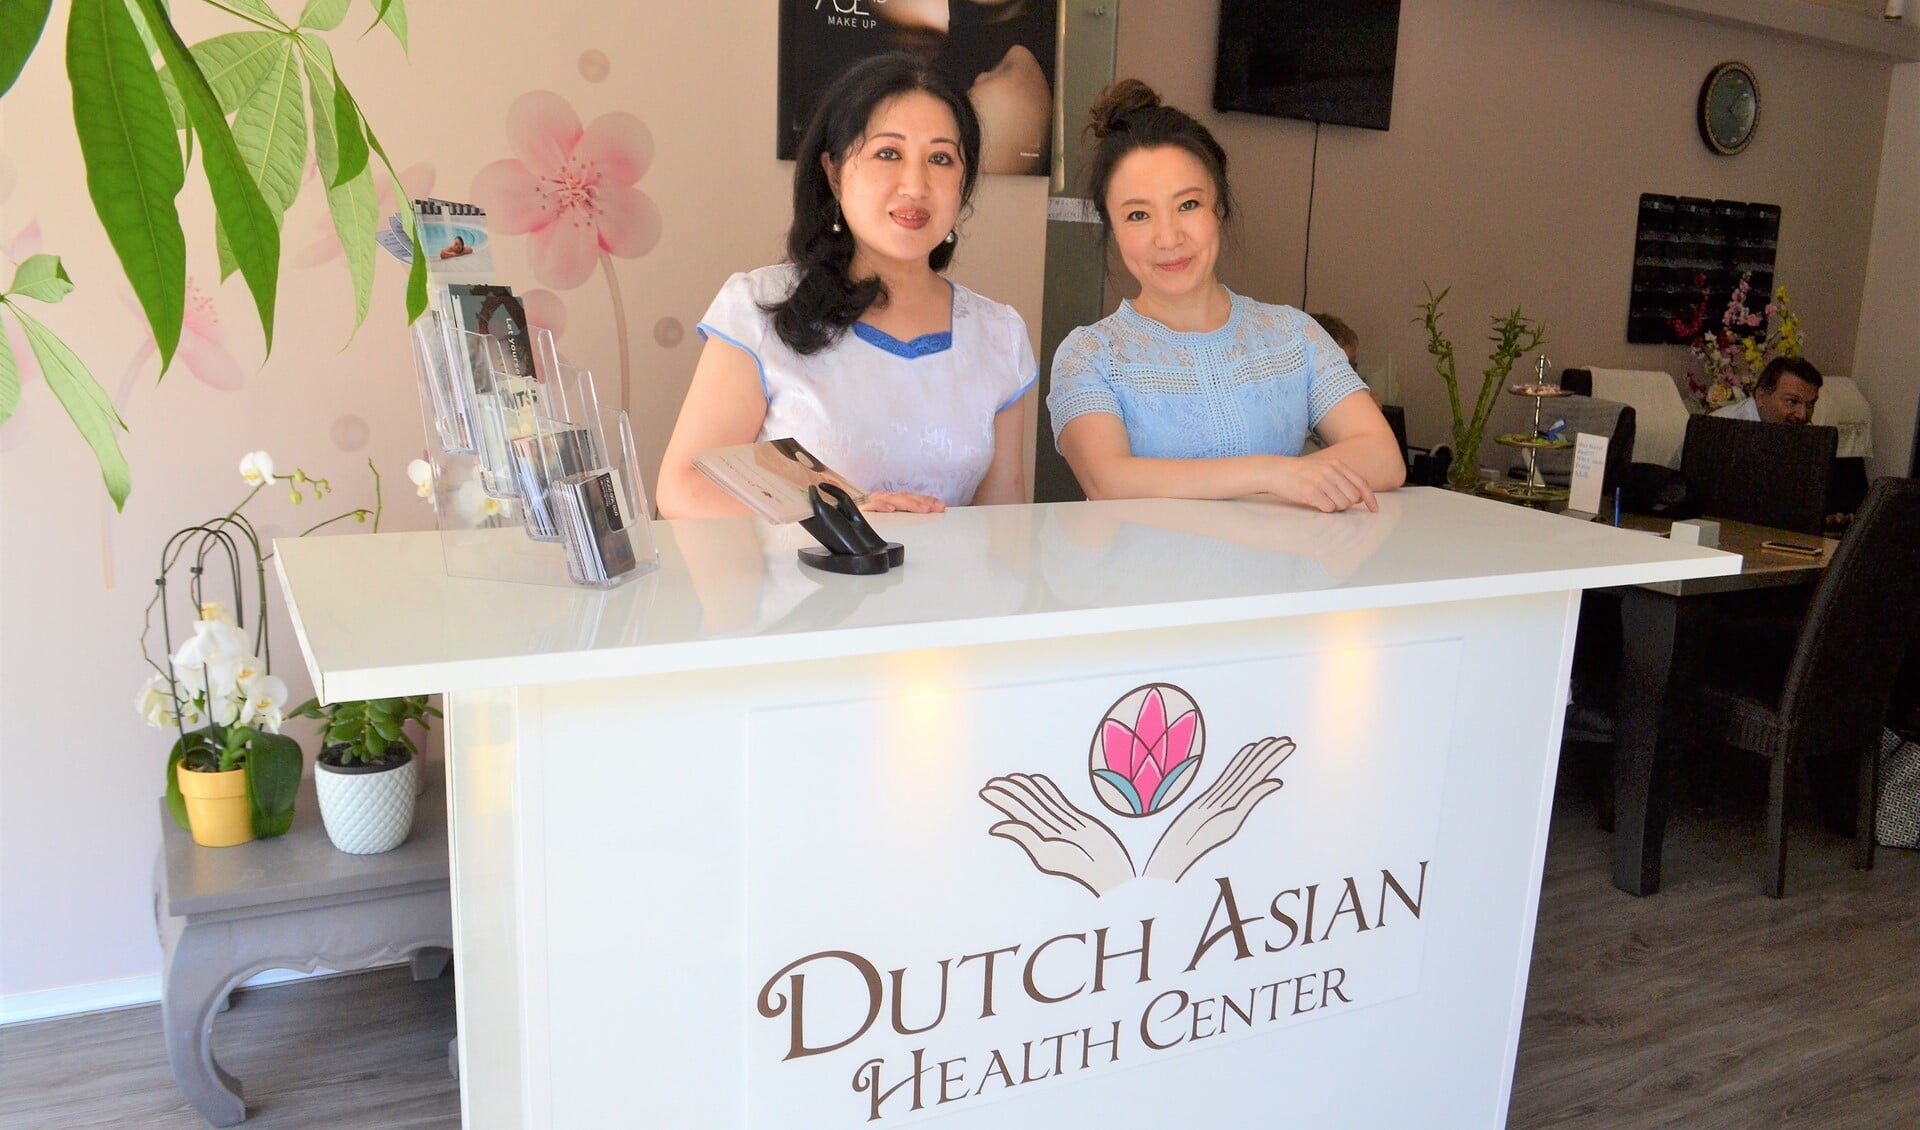 Xiaoming Yan biedt samen met haar collega een compleet pakket aan wellness behandelingen (foto: Inge Koot).